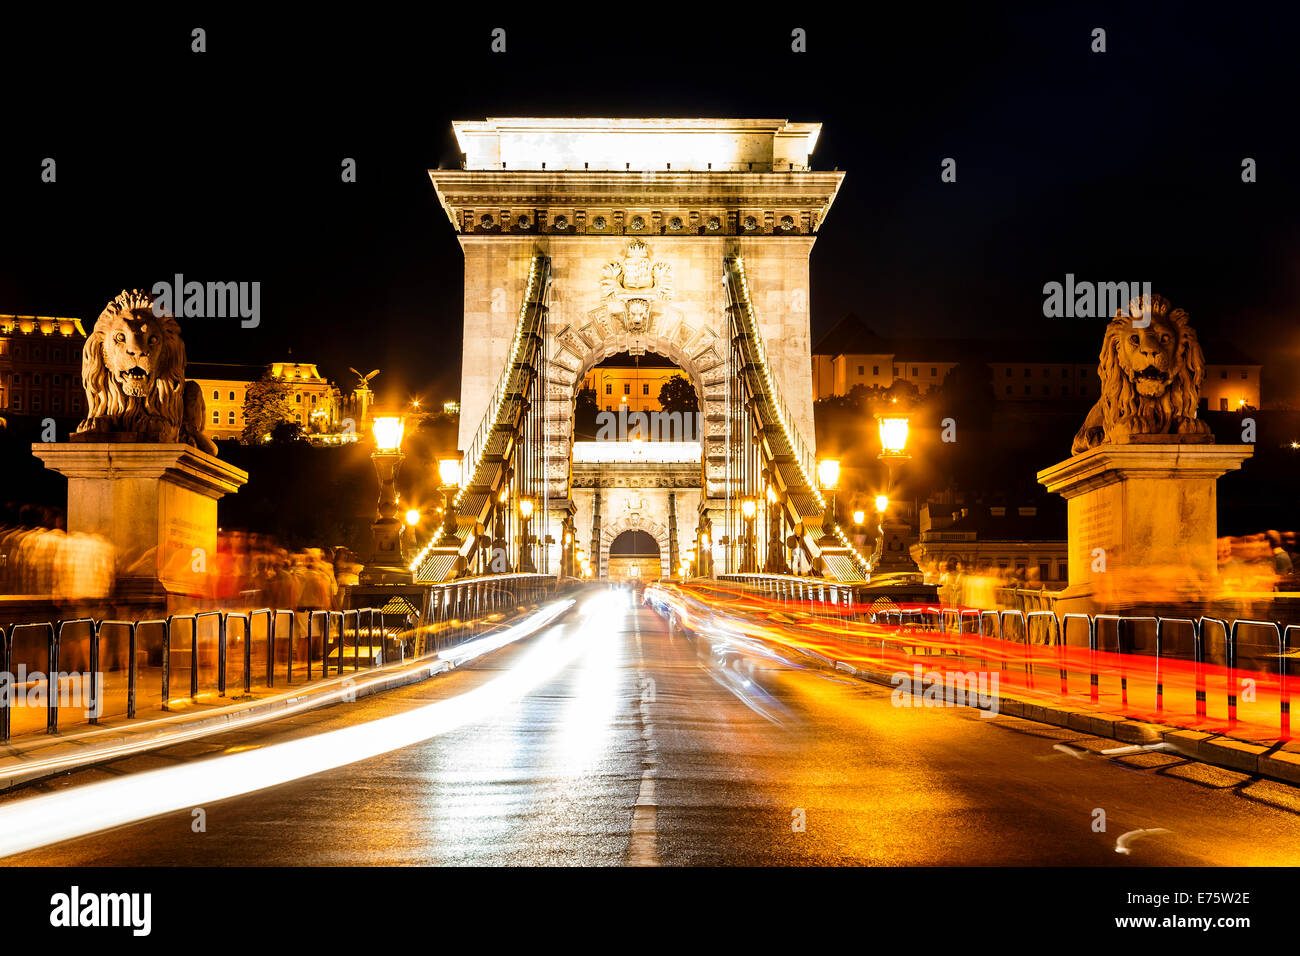 Chain Bridge at night, Budapest, Hungary Stock Photo